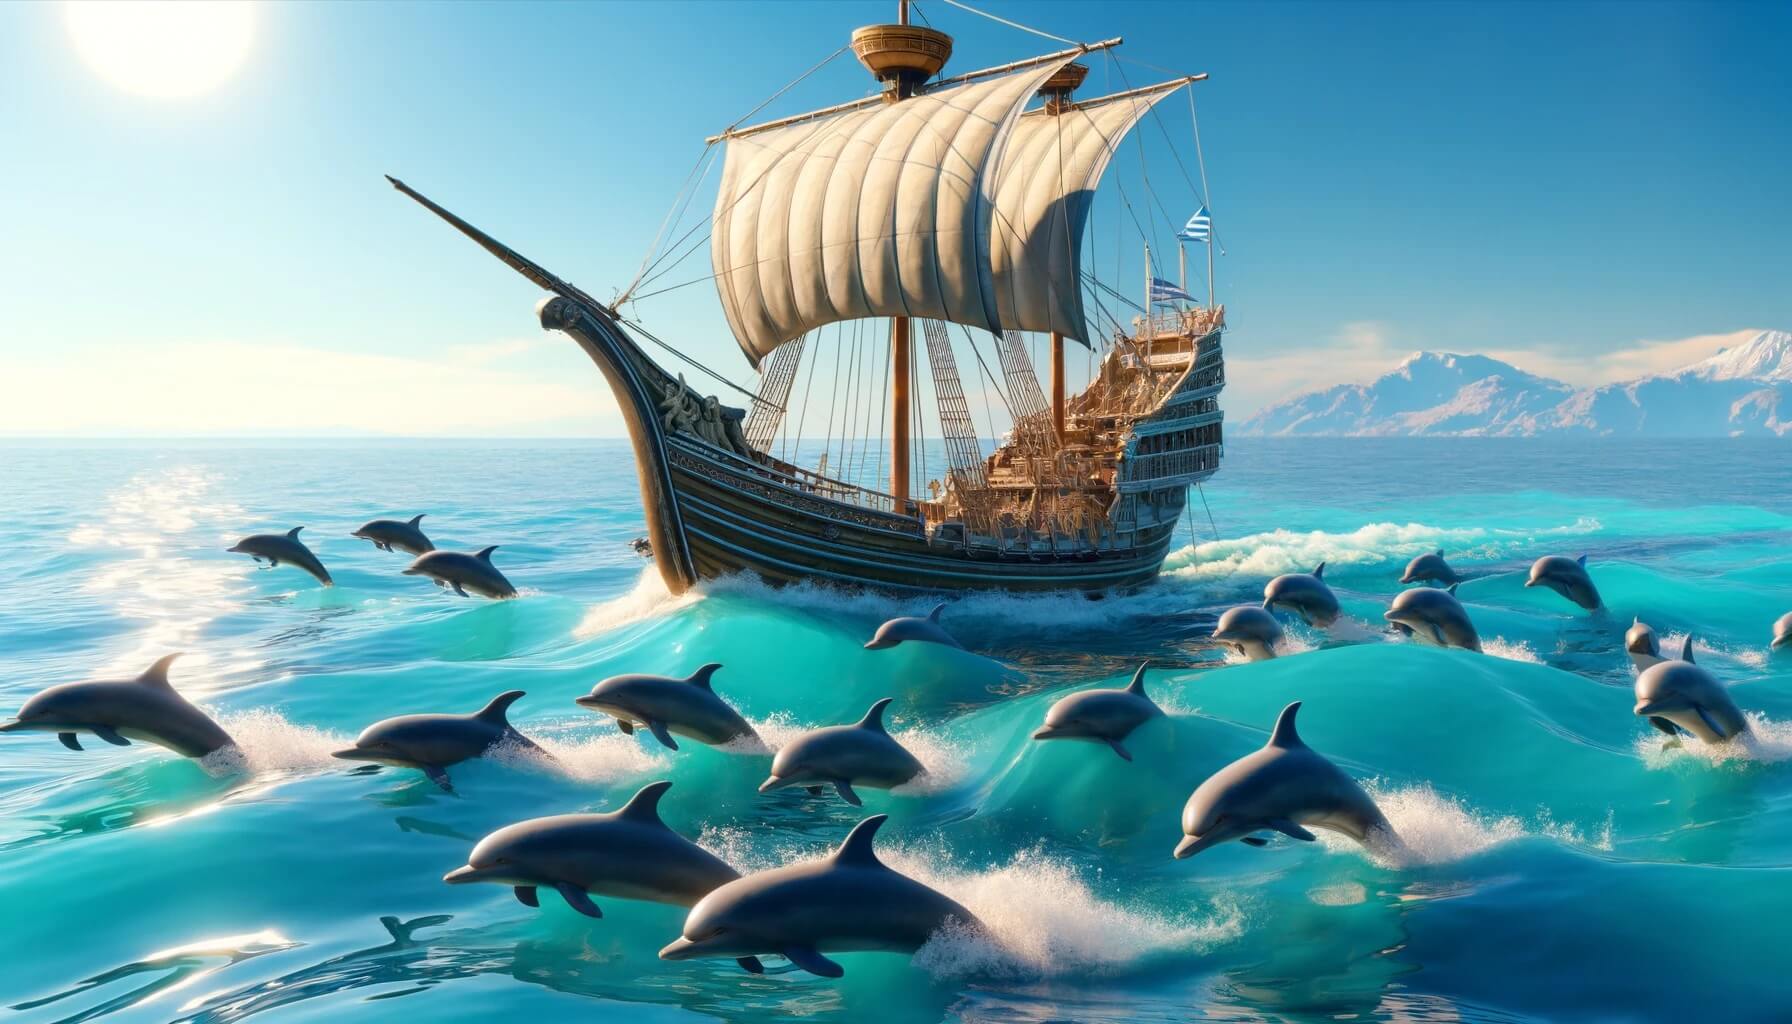 Как ведут себя дельфины. О том, что дельфины часто сопровождают корабли, известно с древних времен. Фото.